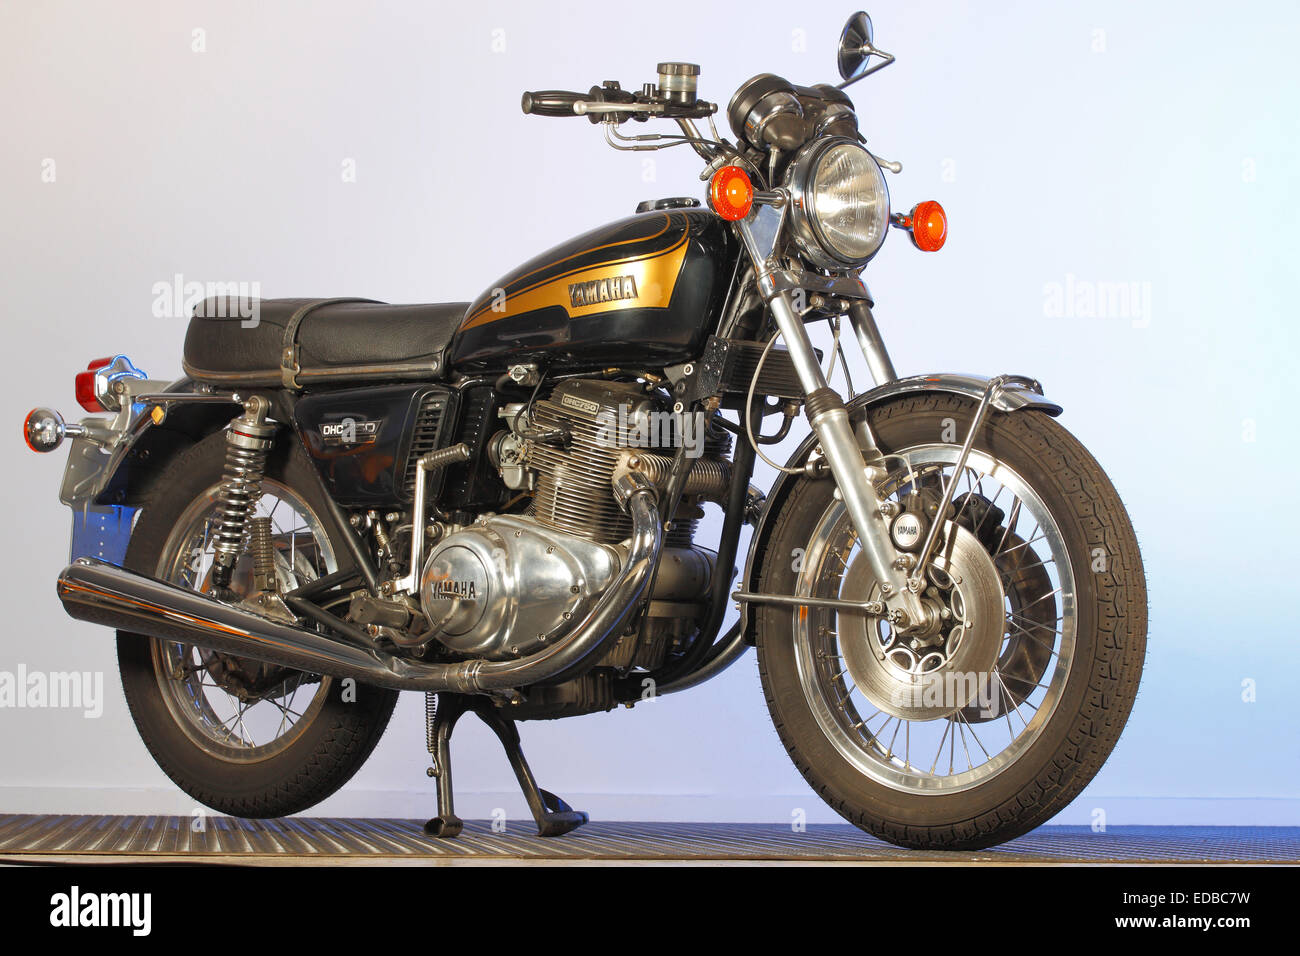 Yamaha Motorcycle OHC 750 Stock Photo